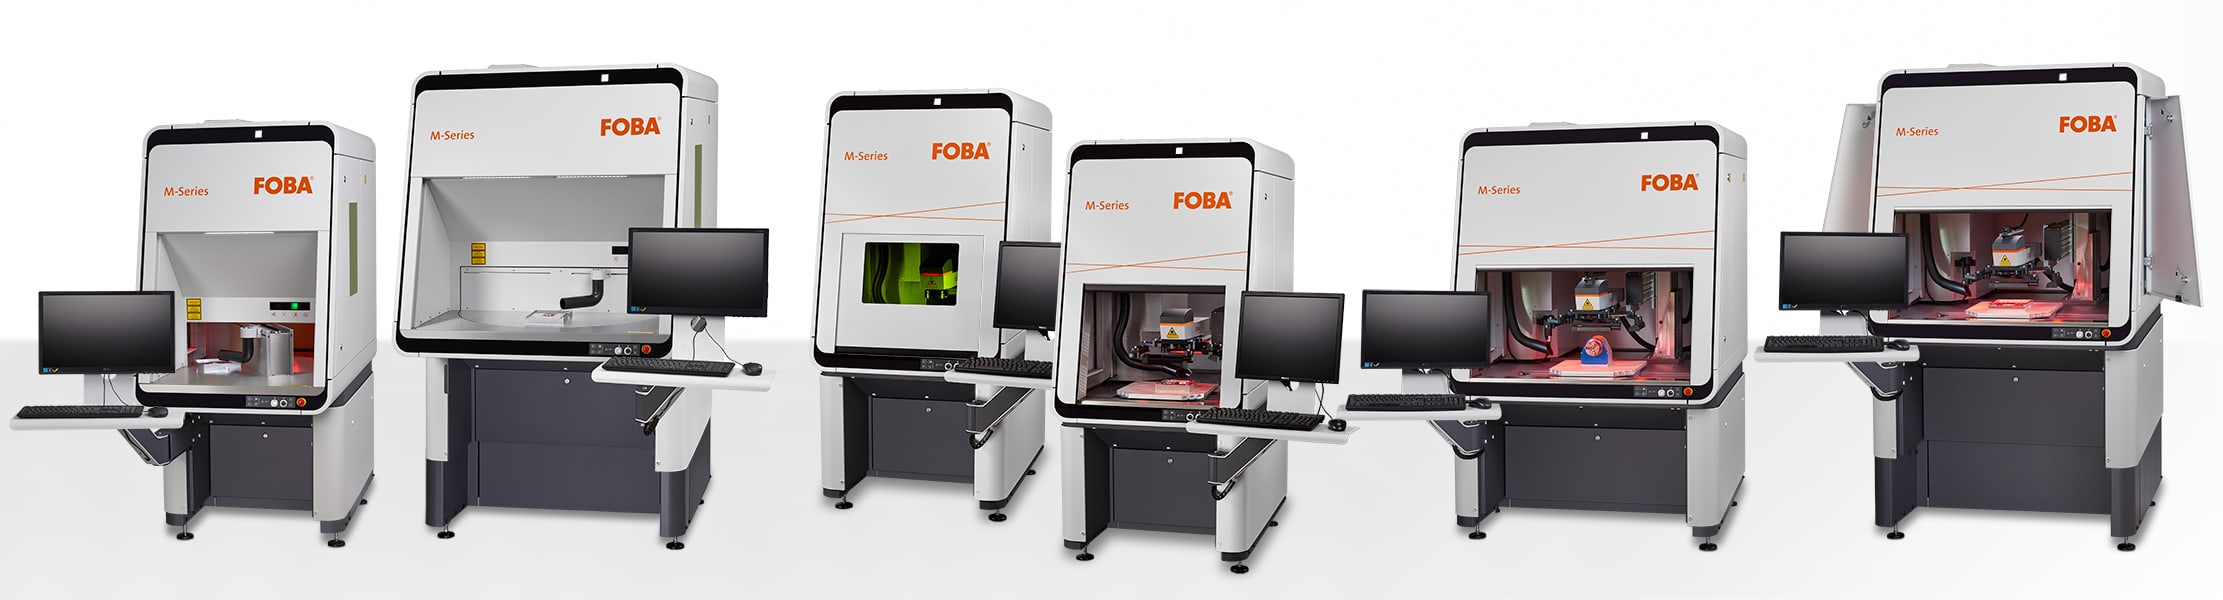 FOBA M-Series laser marking machines